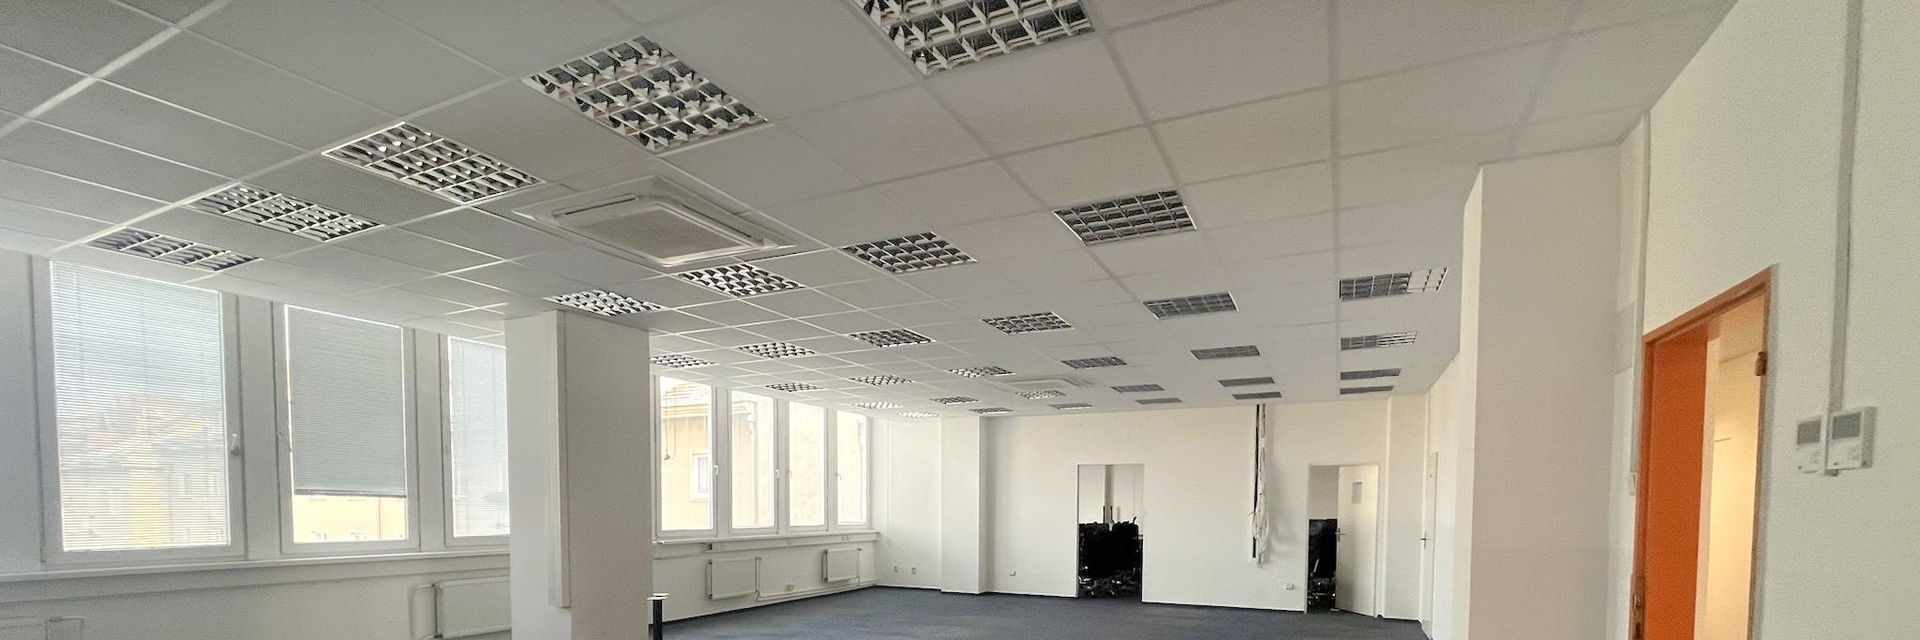 Pronájem částečně klimatizovaného kancelářského celku 470 m² - Brno - Veveří